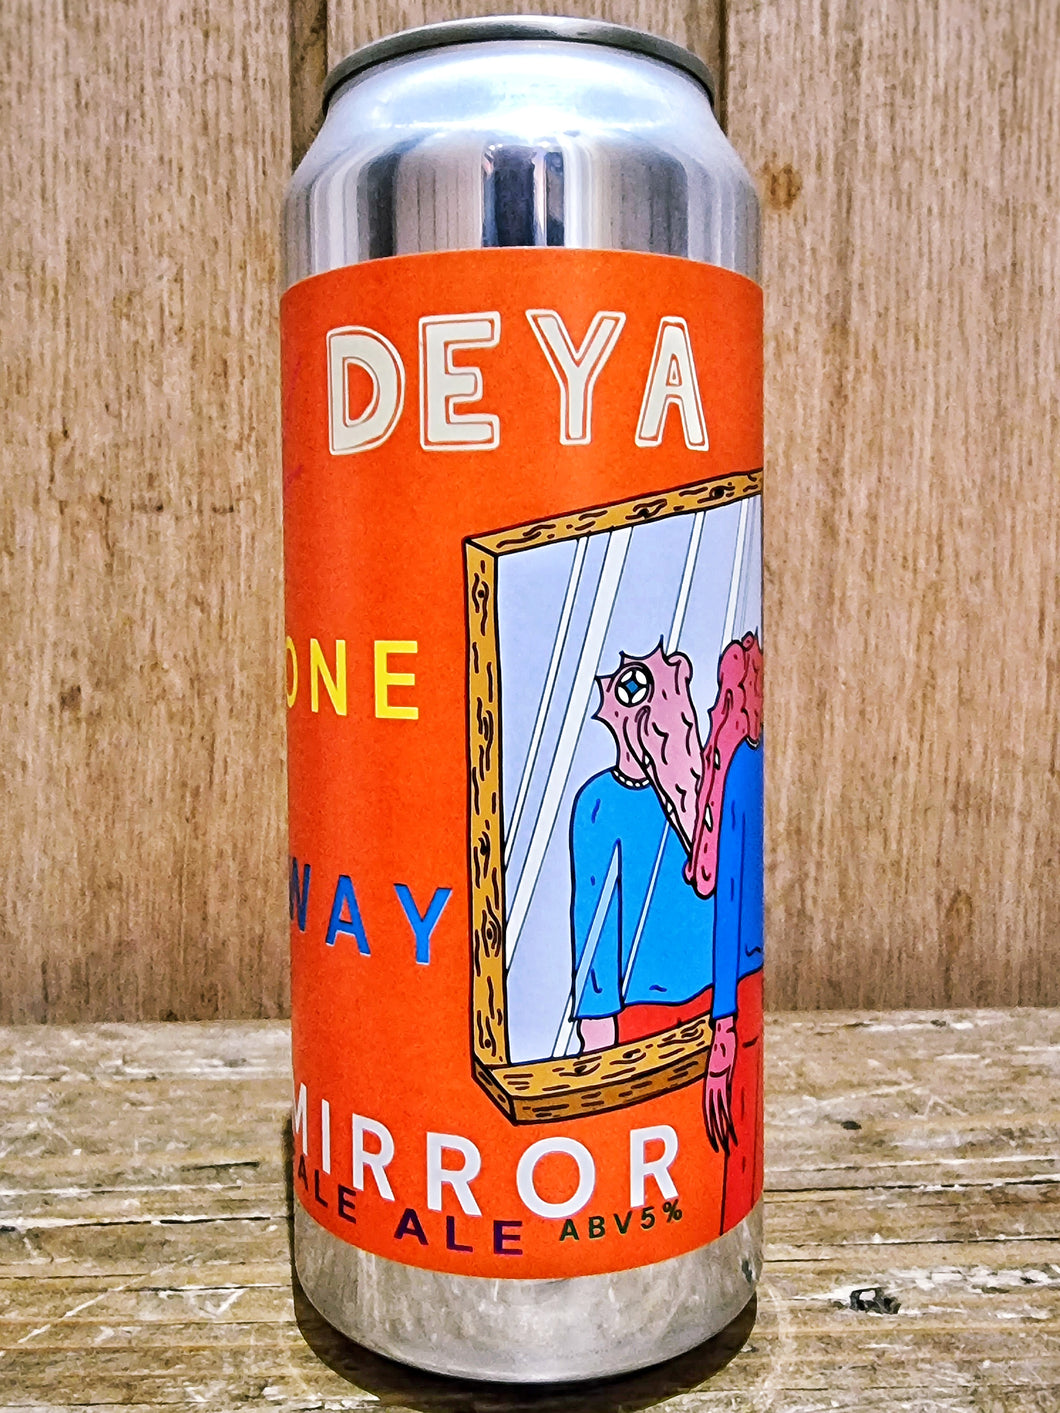 DEYA - One Way Mirror